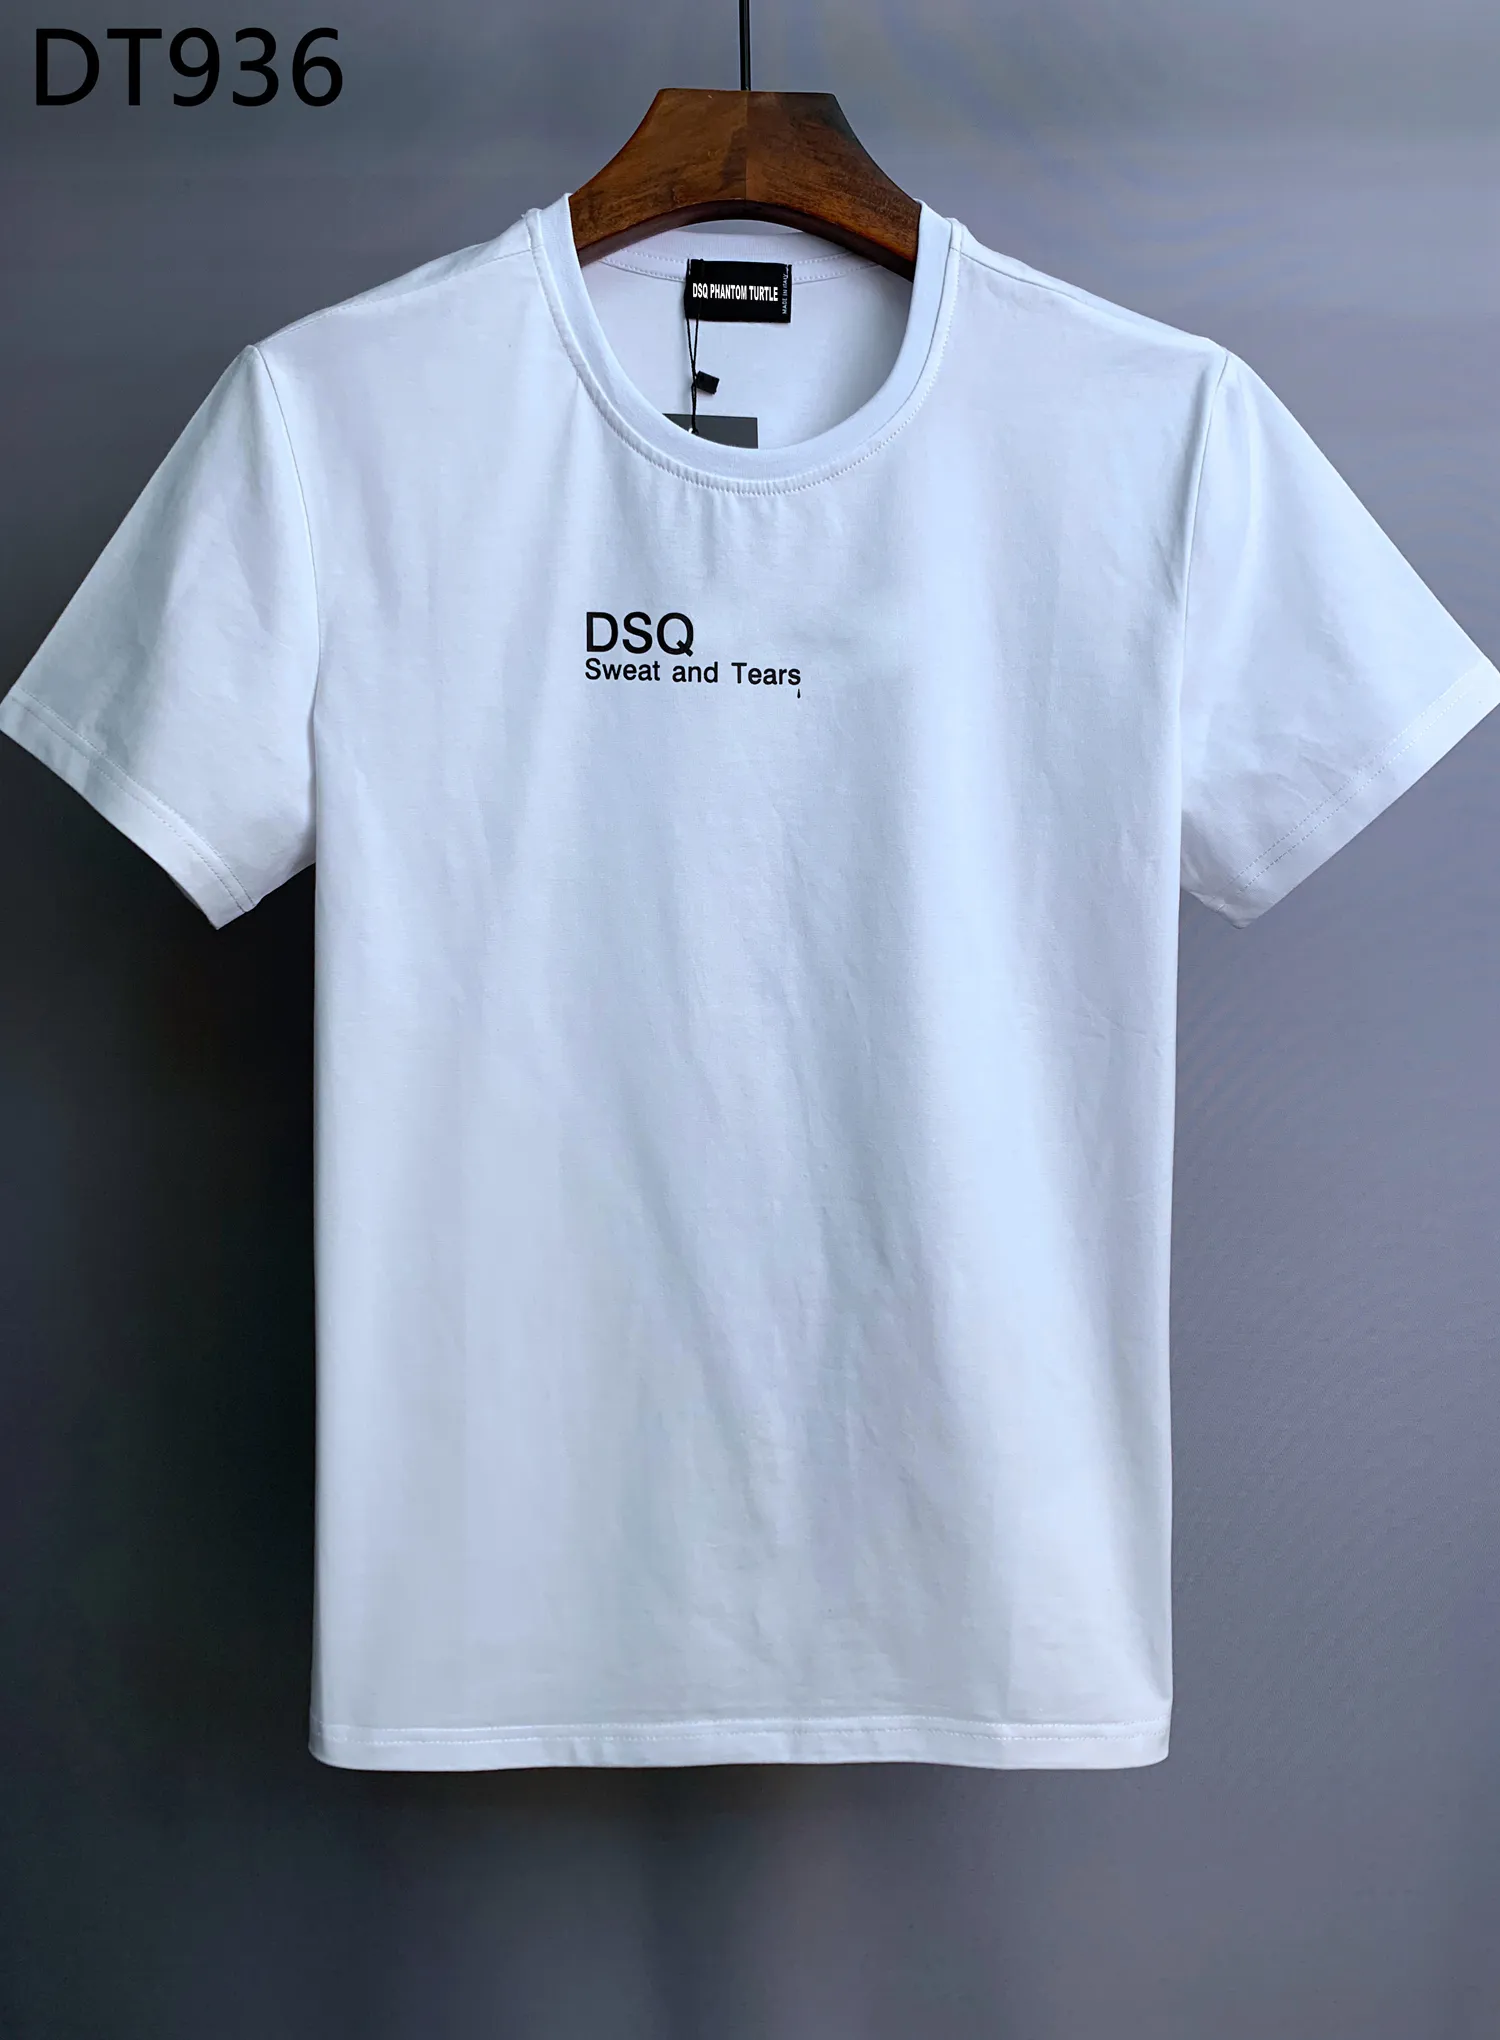 DSQ Phantom Turtle 2022SS Nova Designer de Mens Camiseta Itália Moda Tshirts Verão Homens DSQ T-shirt Masculino Qualidade superior 100% Algodão Tops 158281